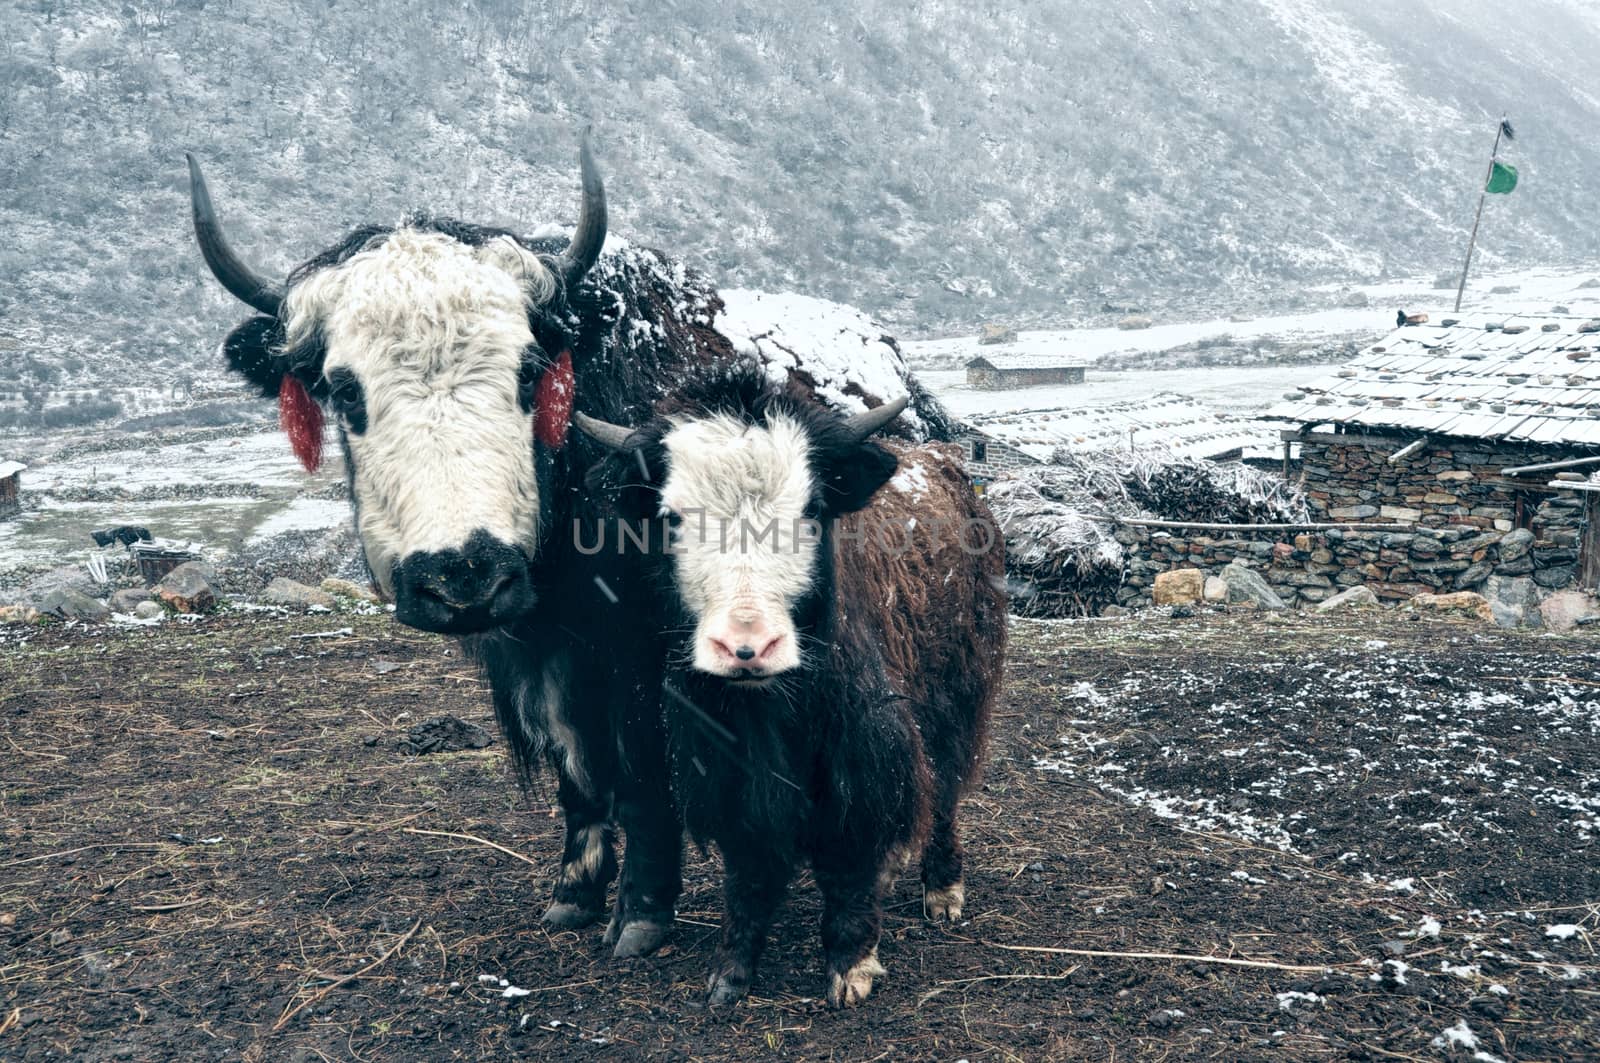 Yaks in Nepal by MichalKnitl